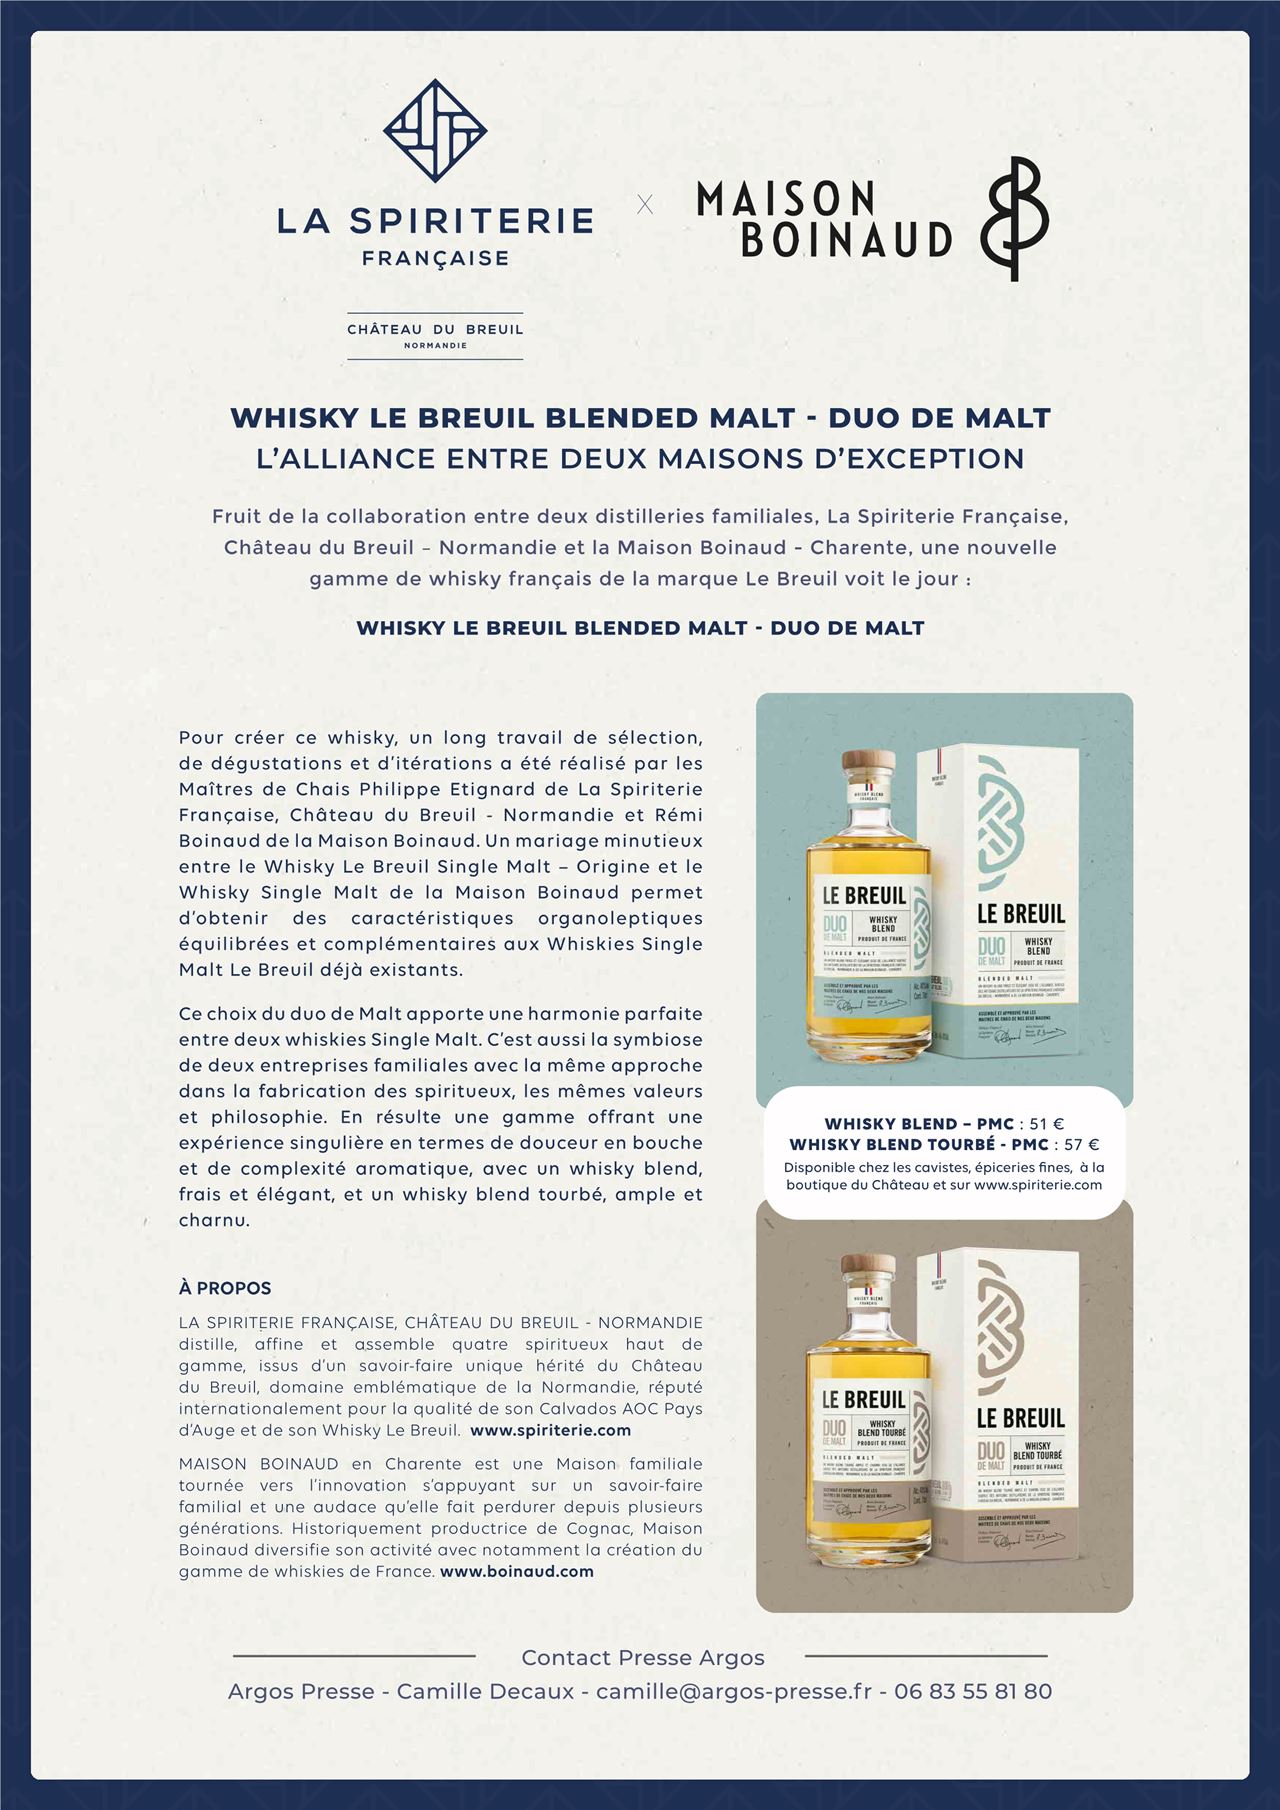 Whisky duo de malt français tourbé Château du Breuil en Normandie